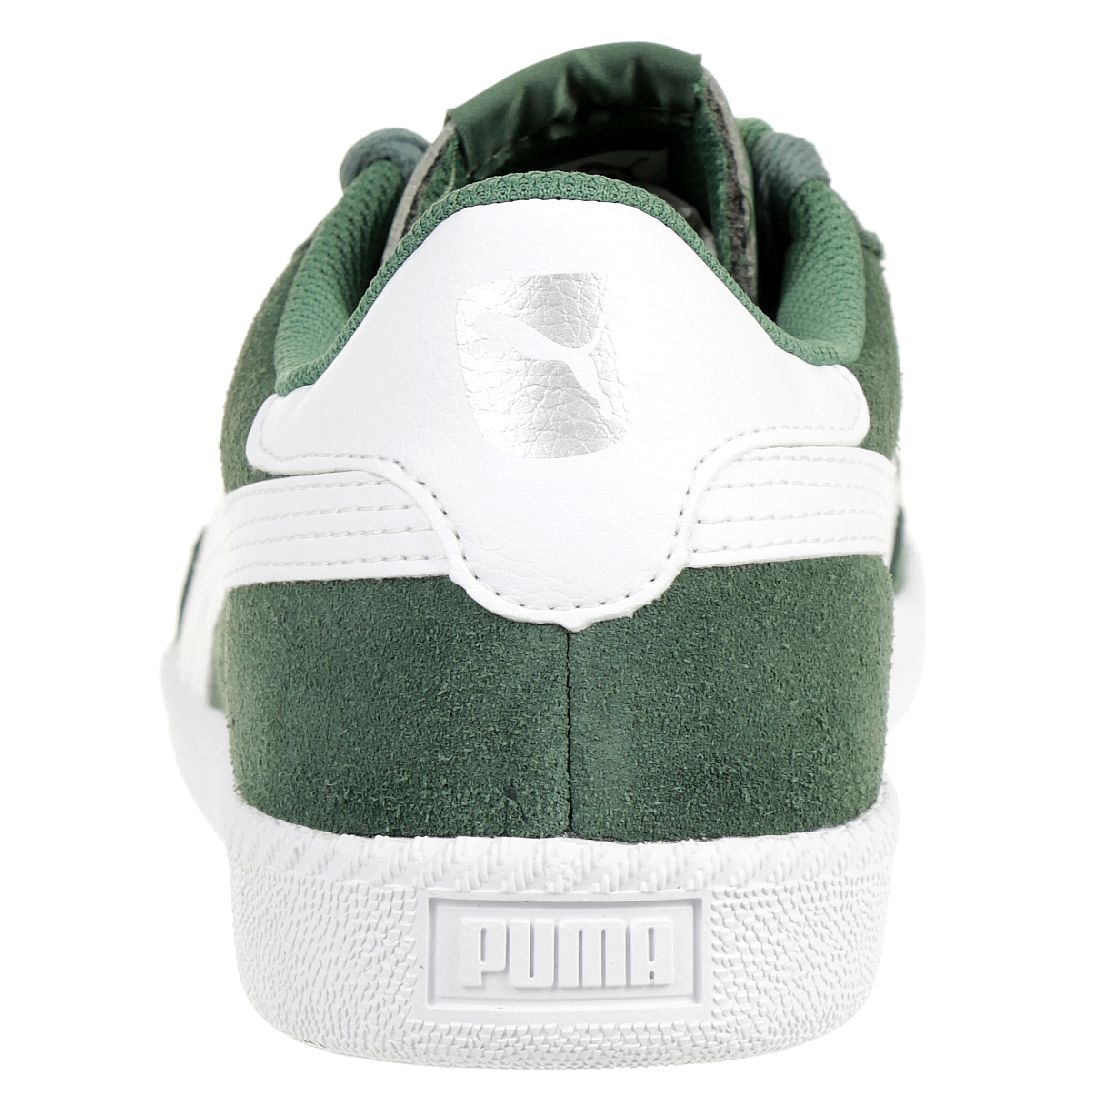 Puma Astro Cup Herren Sneaker Low-Top grün 364423 10